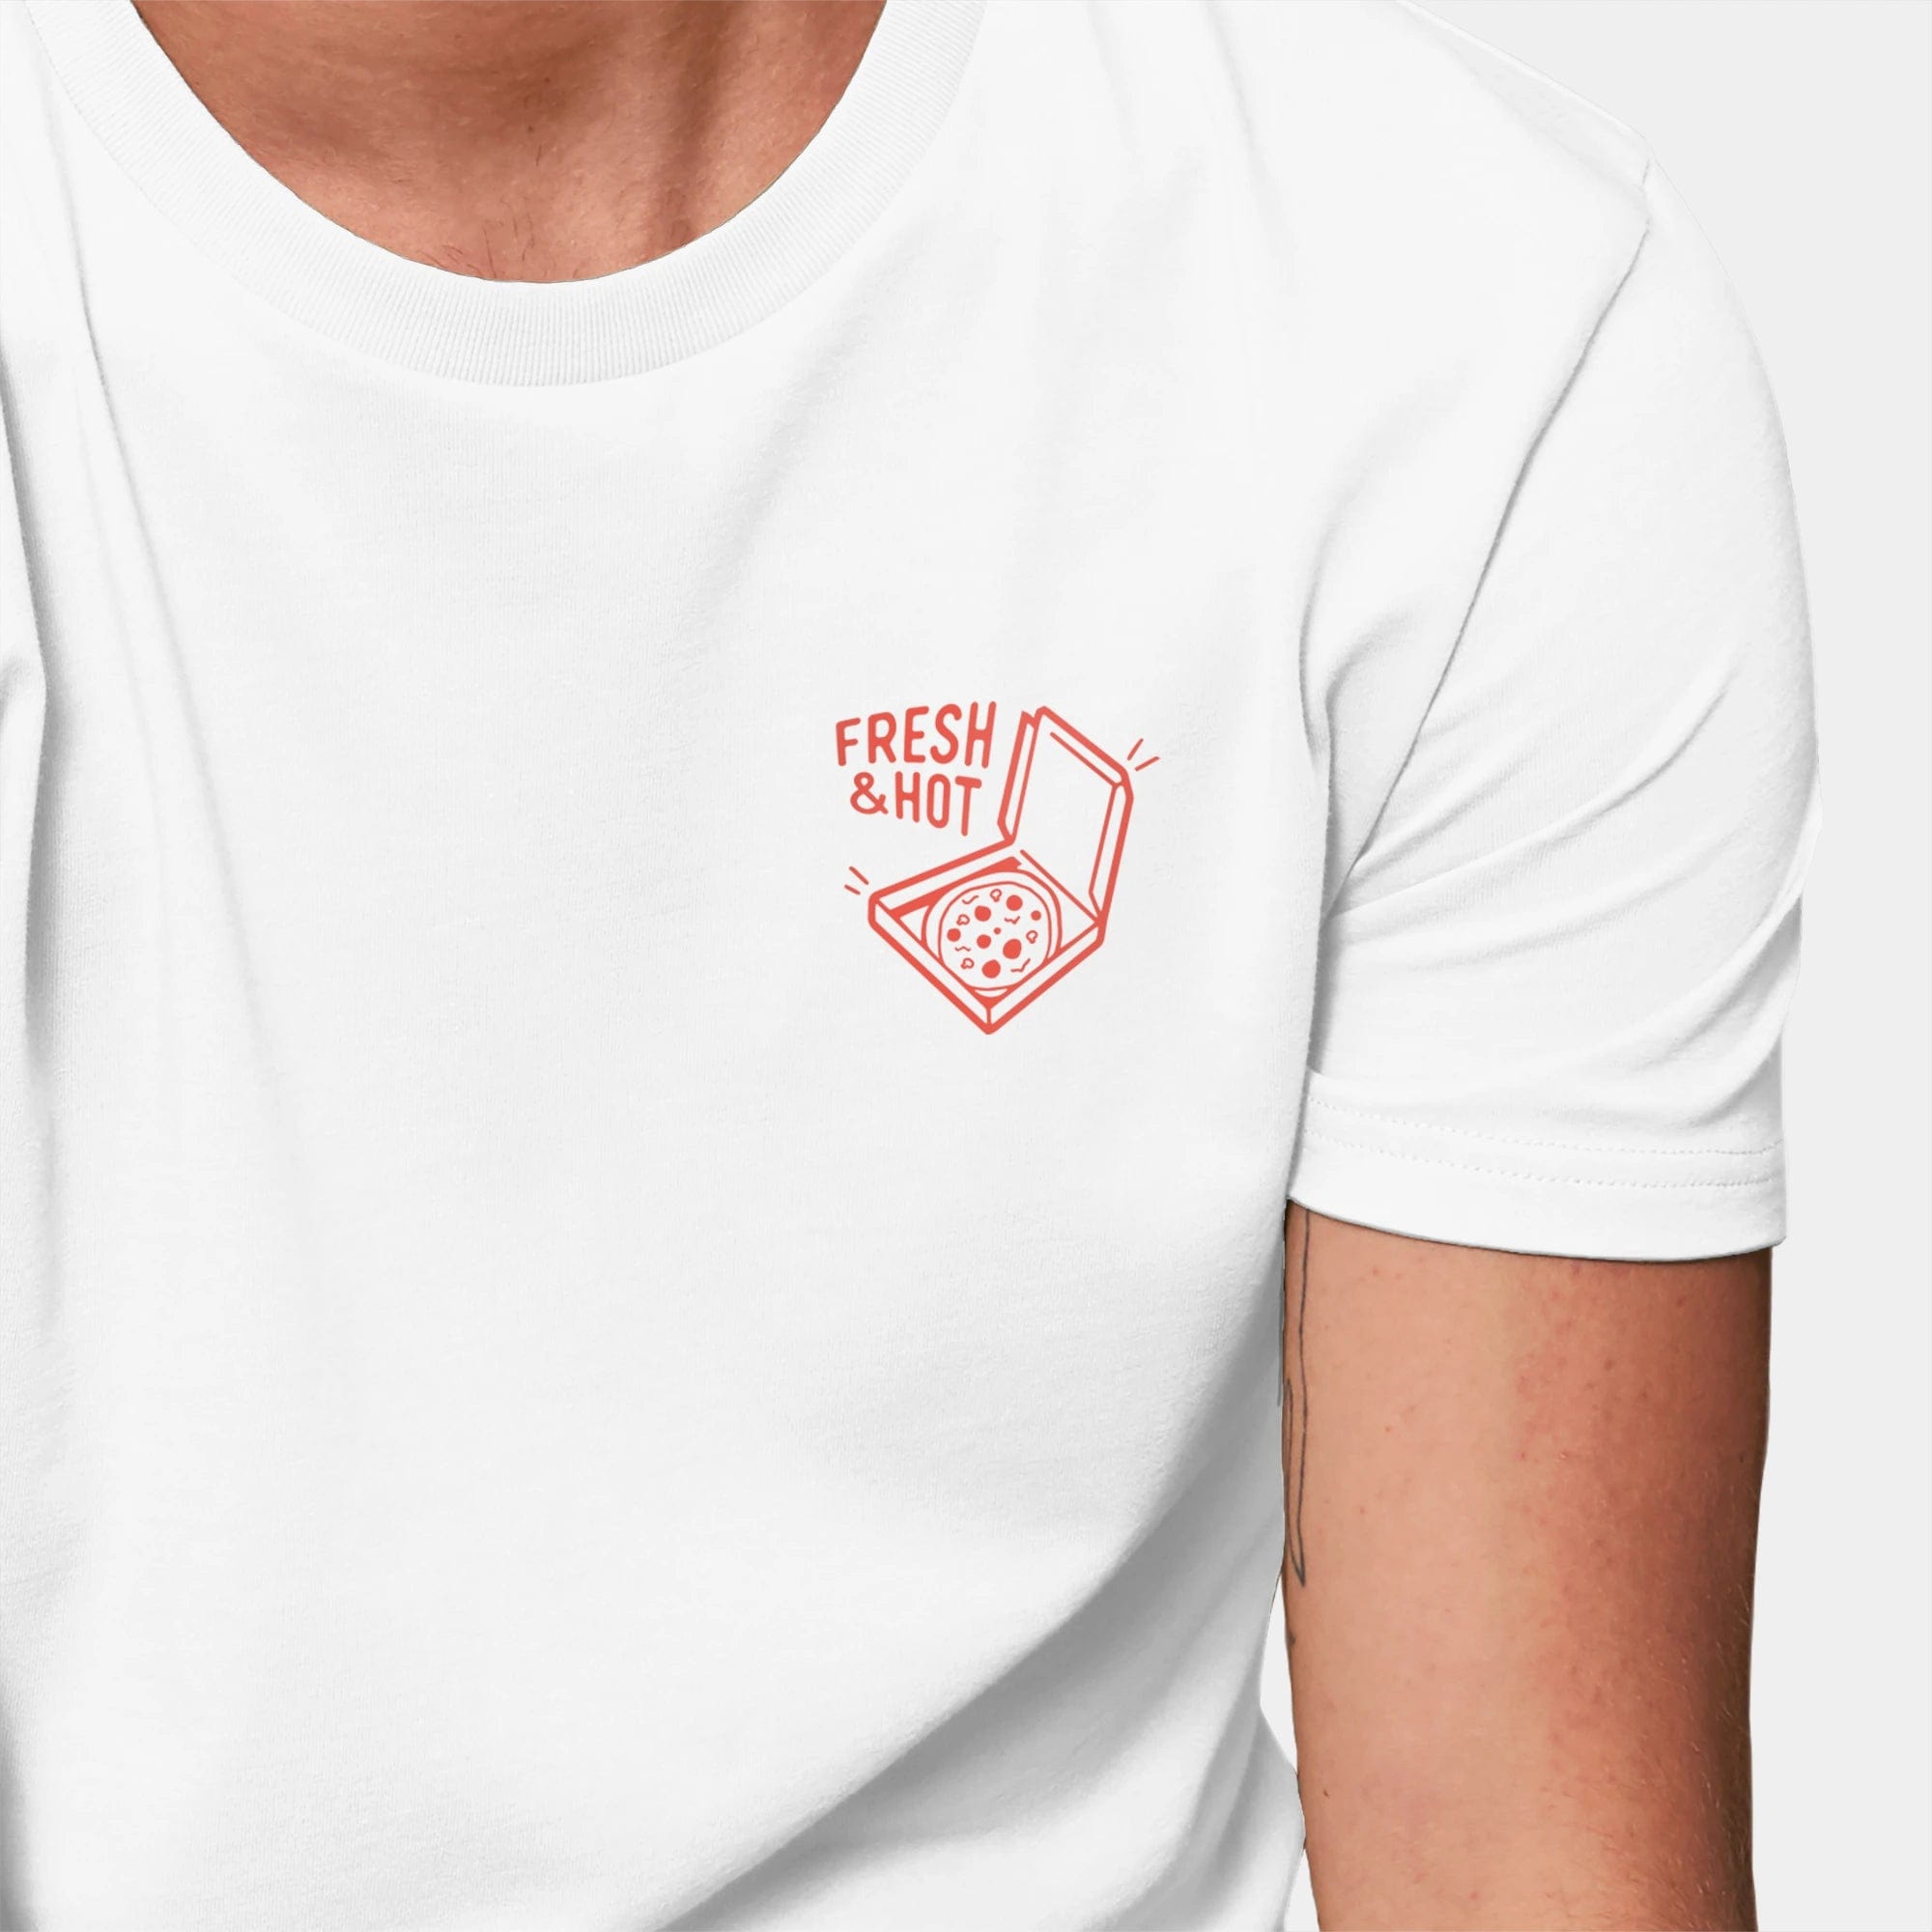 HEITER & LÄSSIG T-Shirt "Pizza" - aus nachhaltiger und fairer Produktion